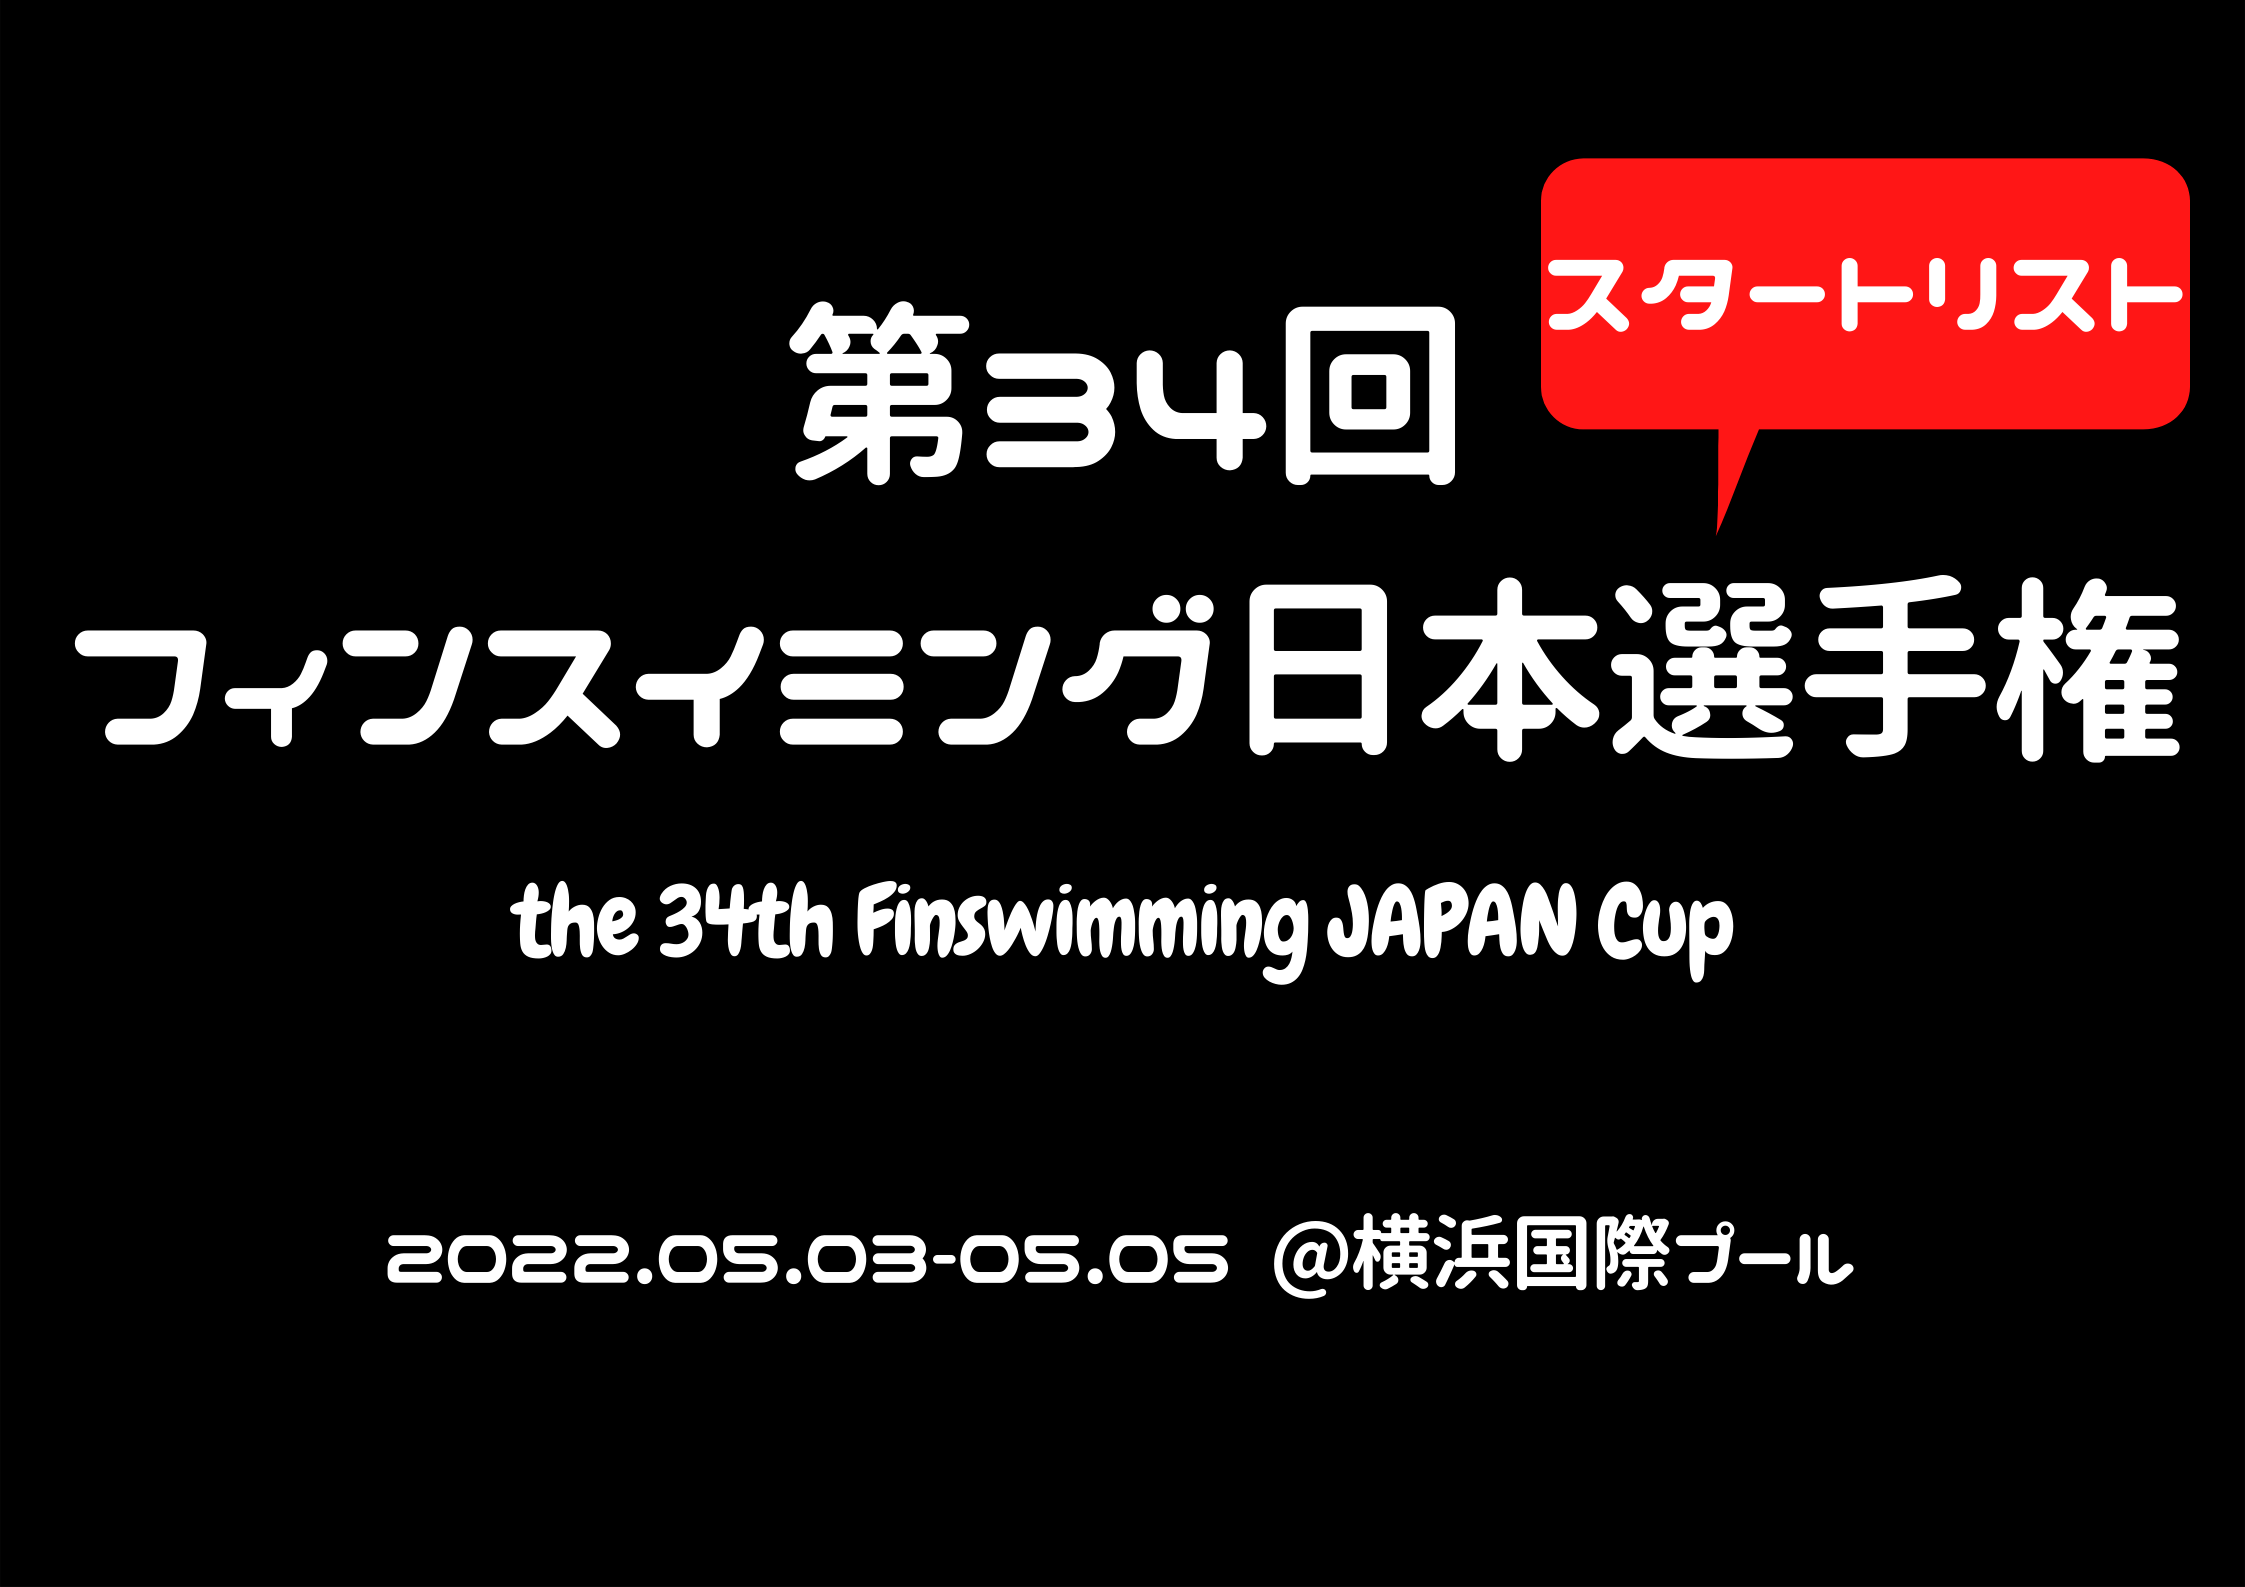 【スタートリスト】第34回フィンスイミング日本選手権